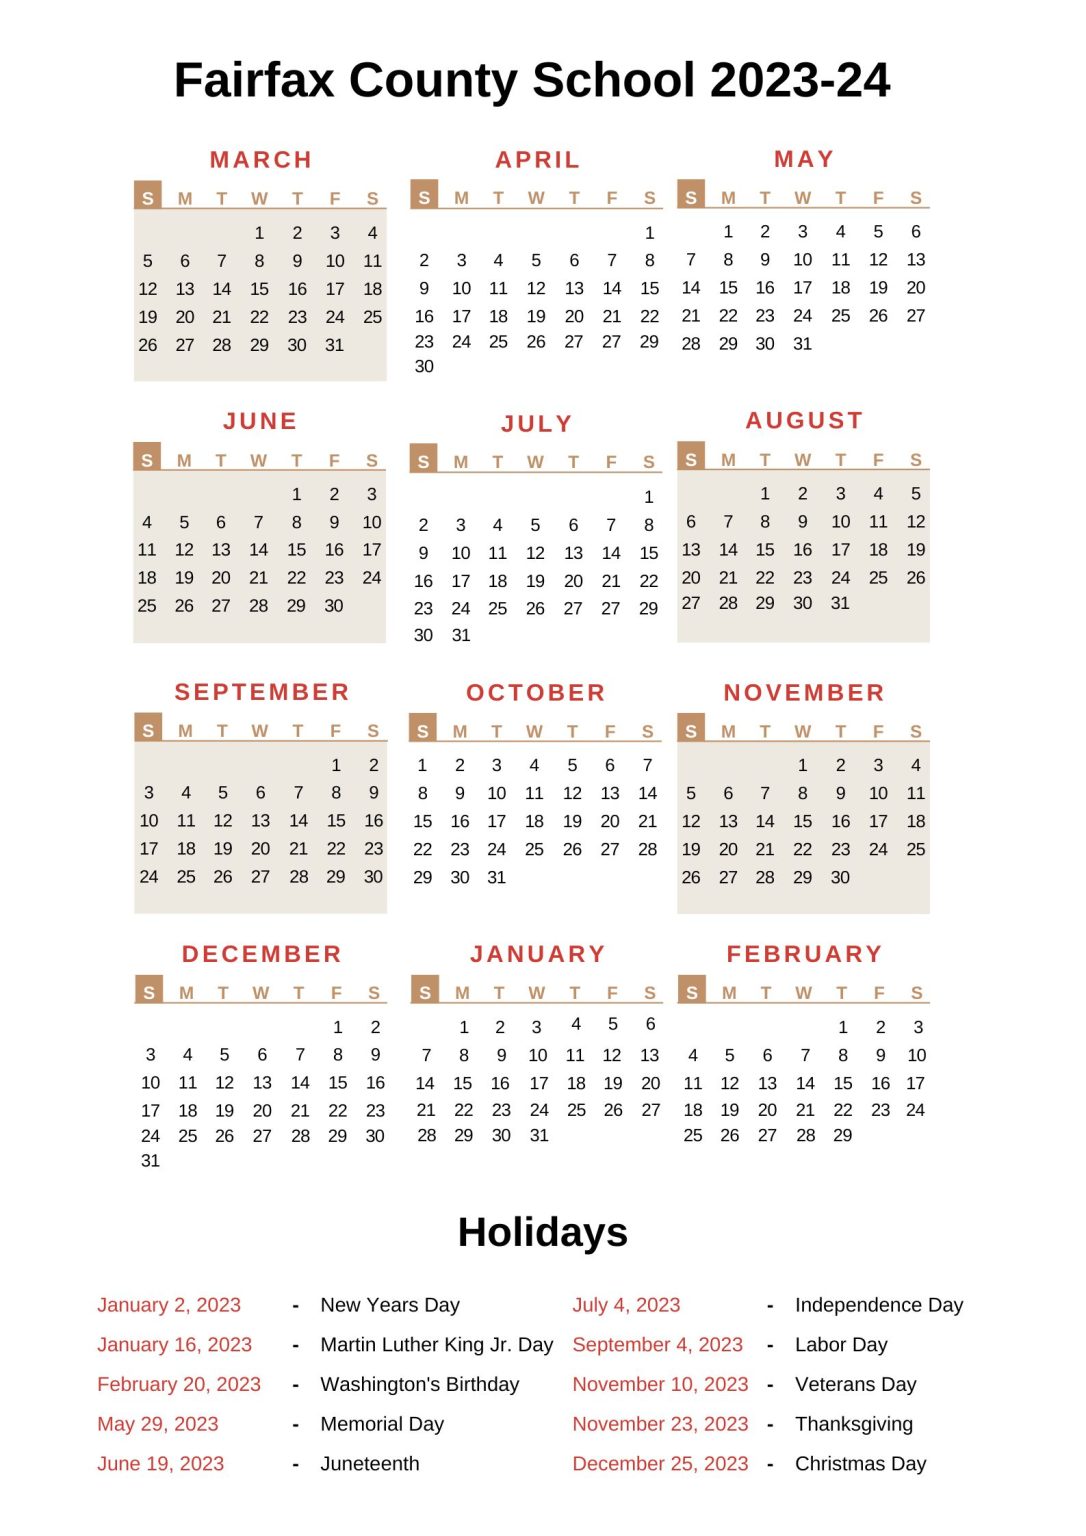 Fairfax County School Calendar with Holidays 20222023